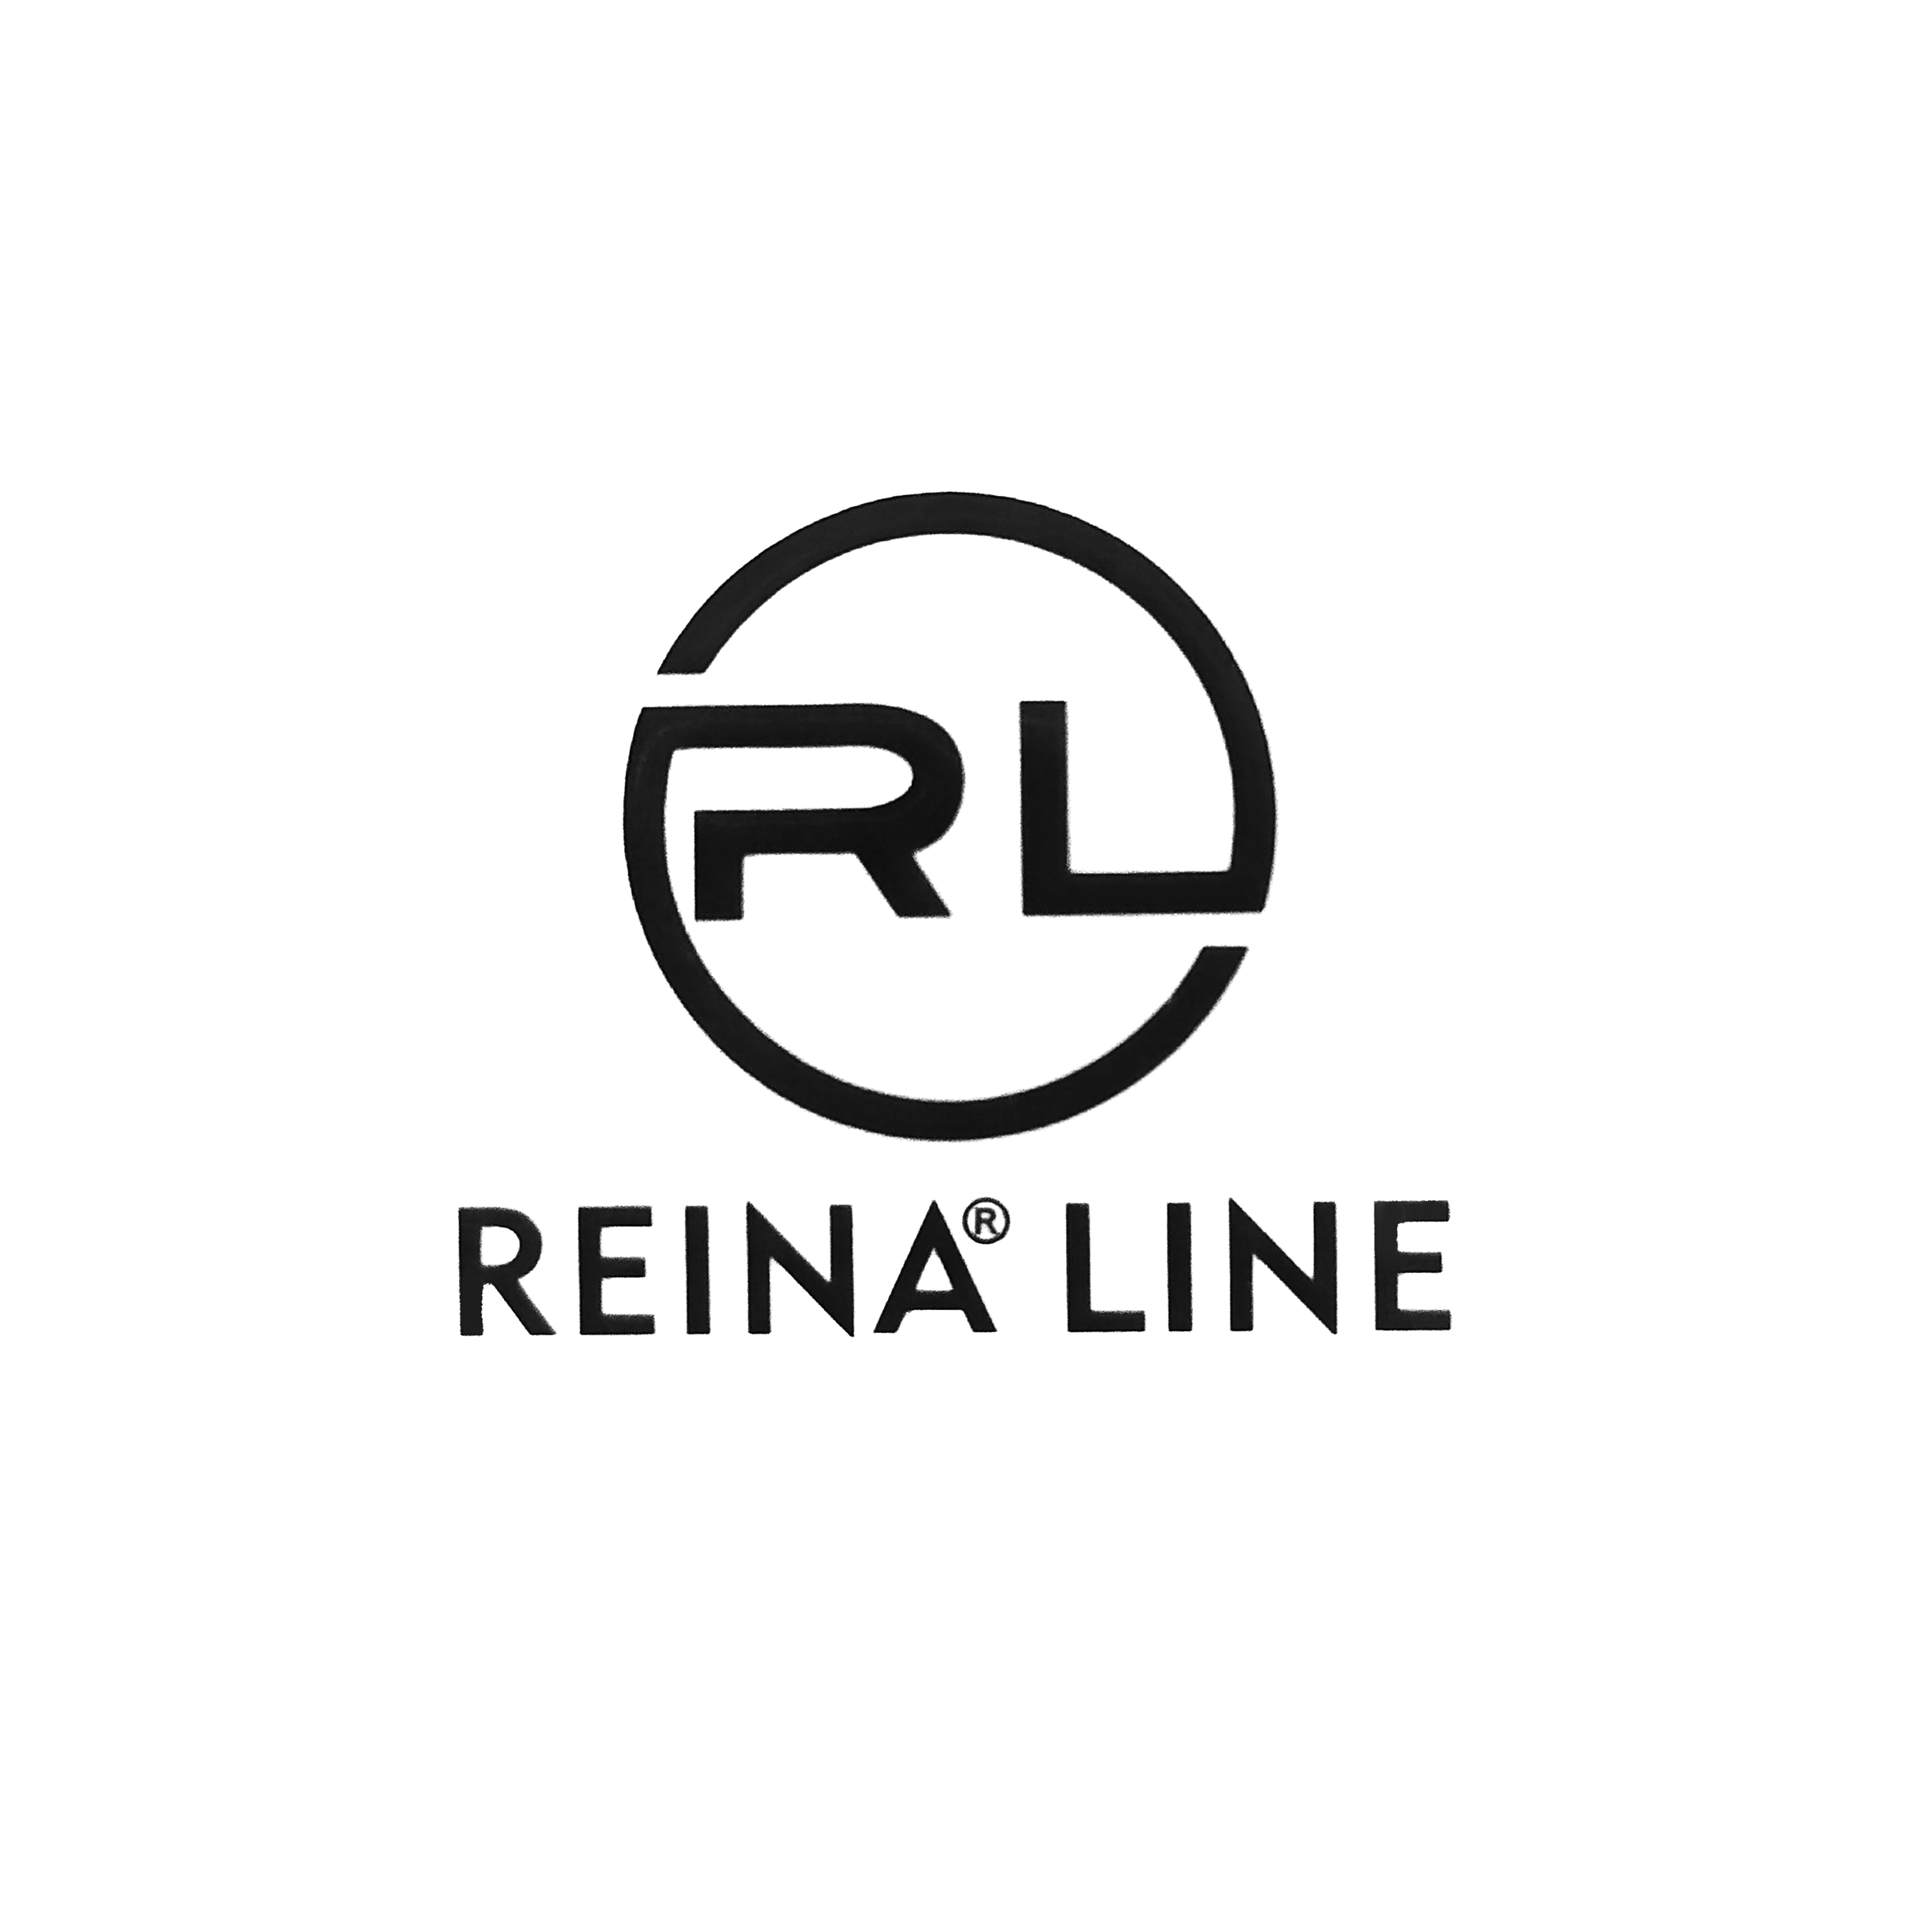 Reina Line